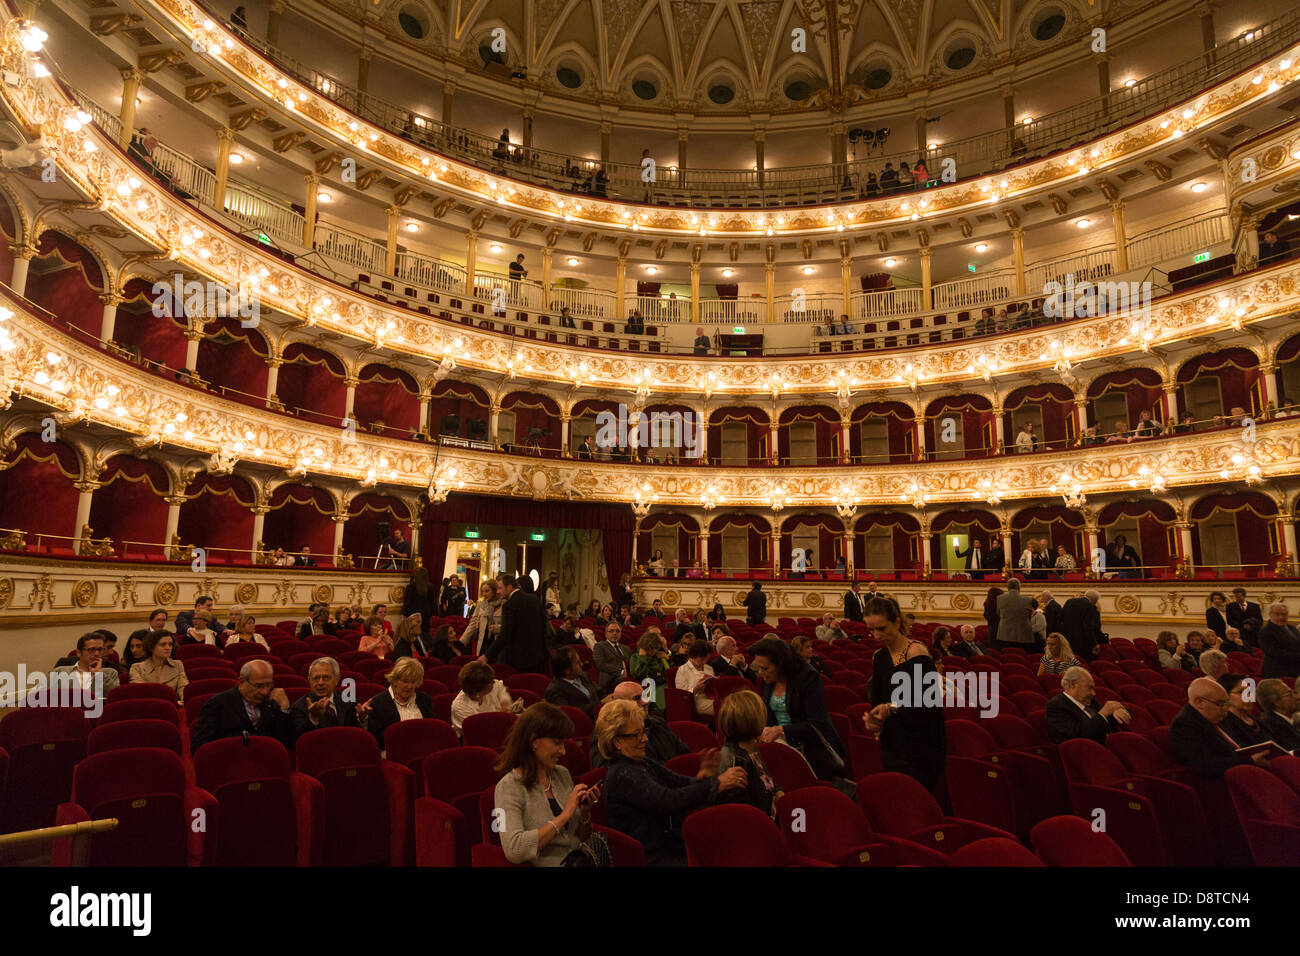 Interno del Teatro Petruzzelli opera house, bari, puglia, Italia Foto stock  - Alamy